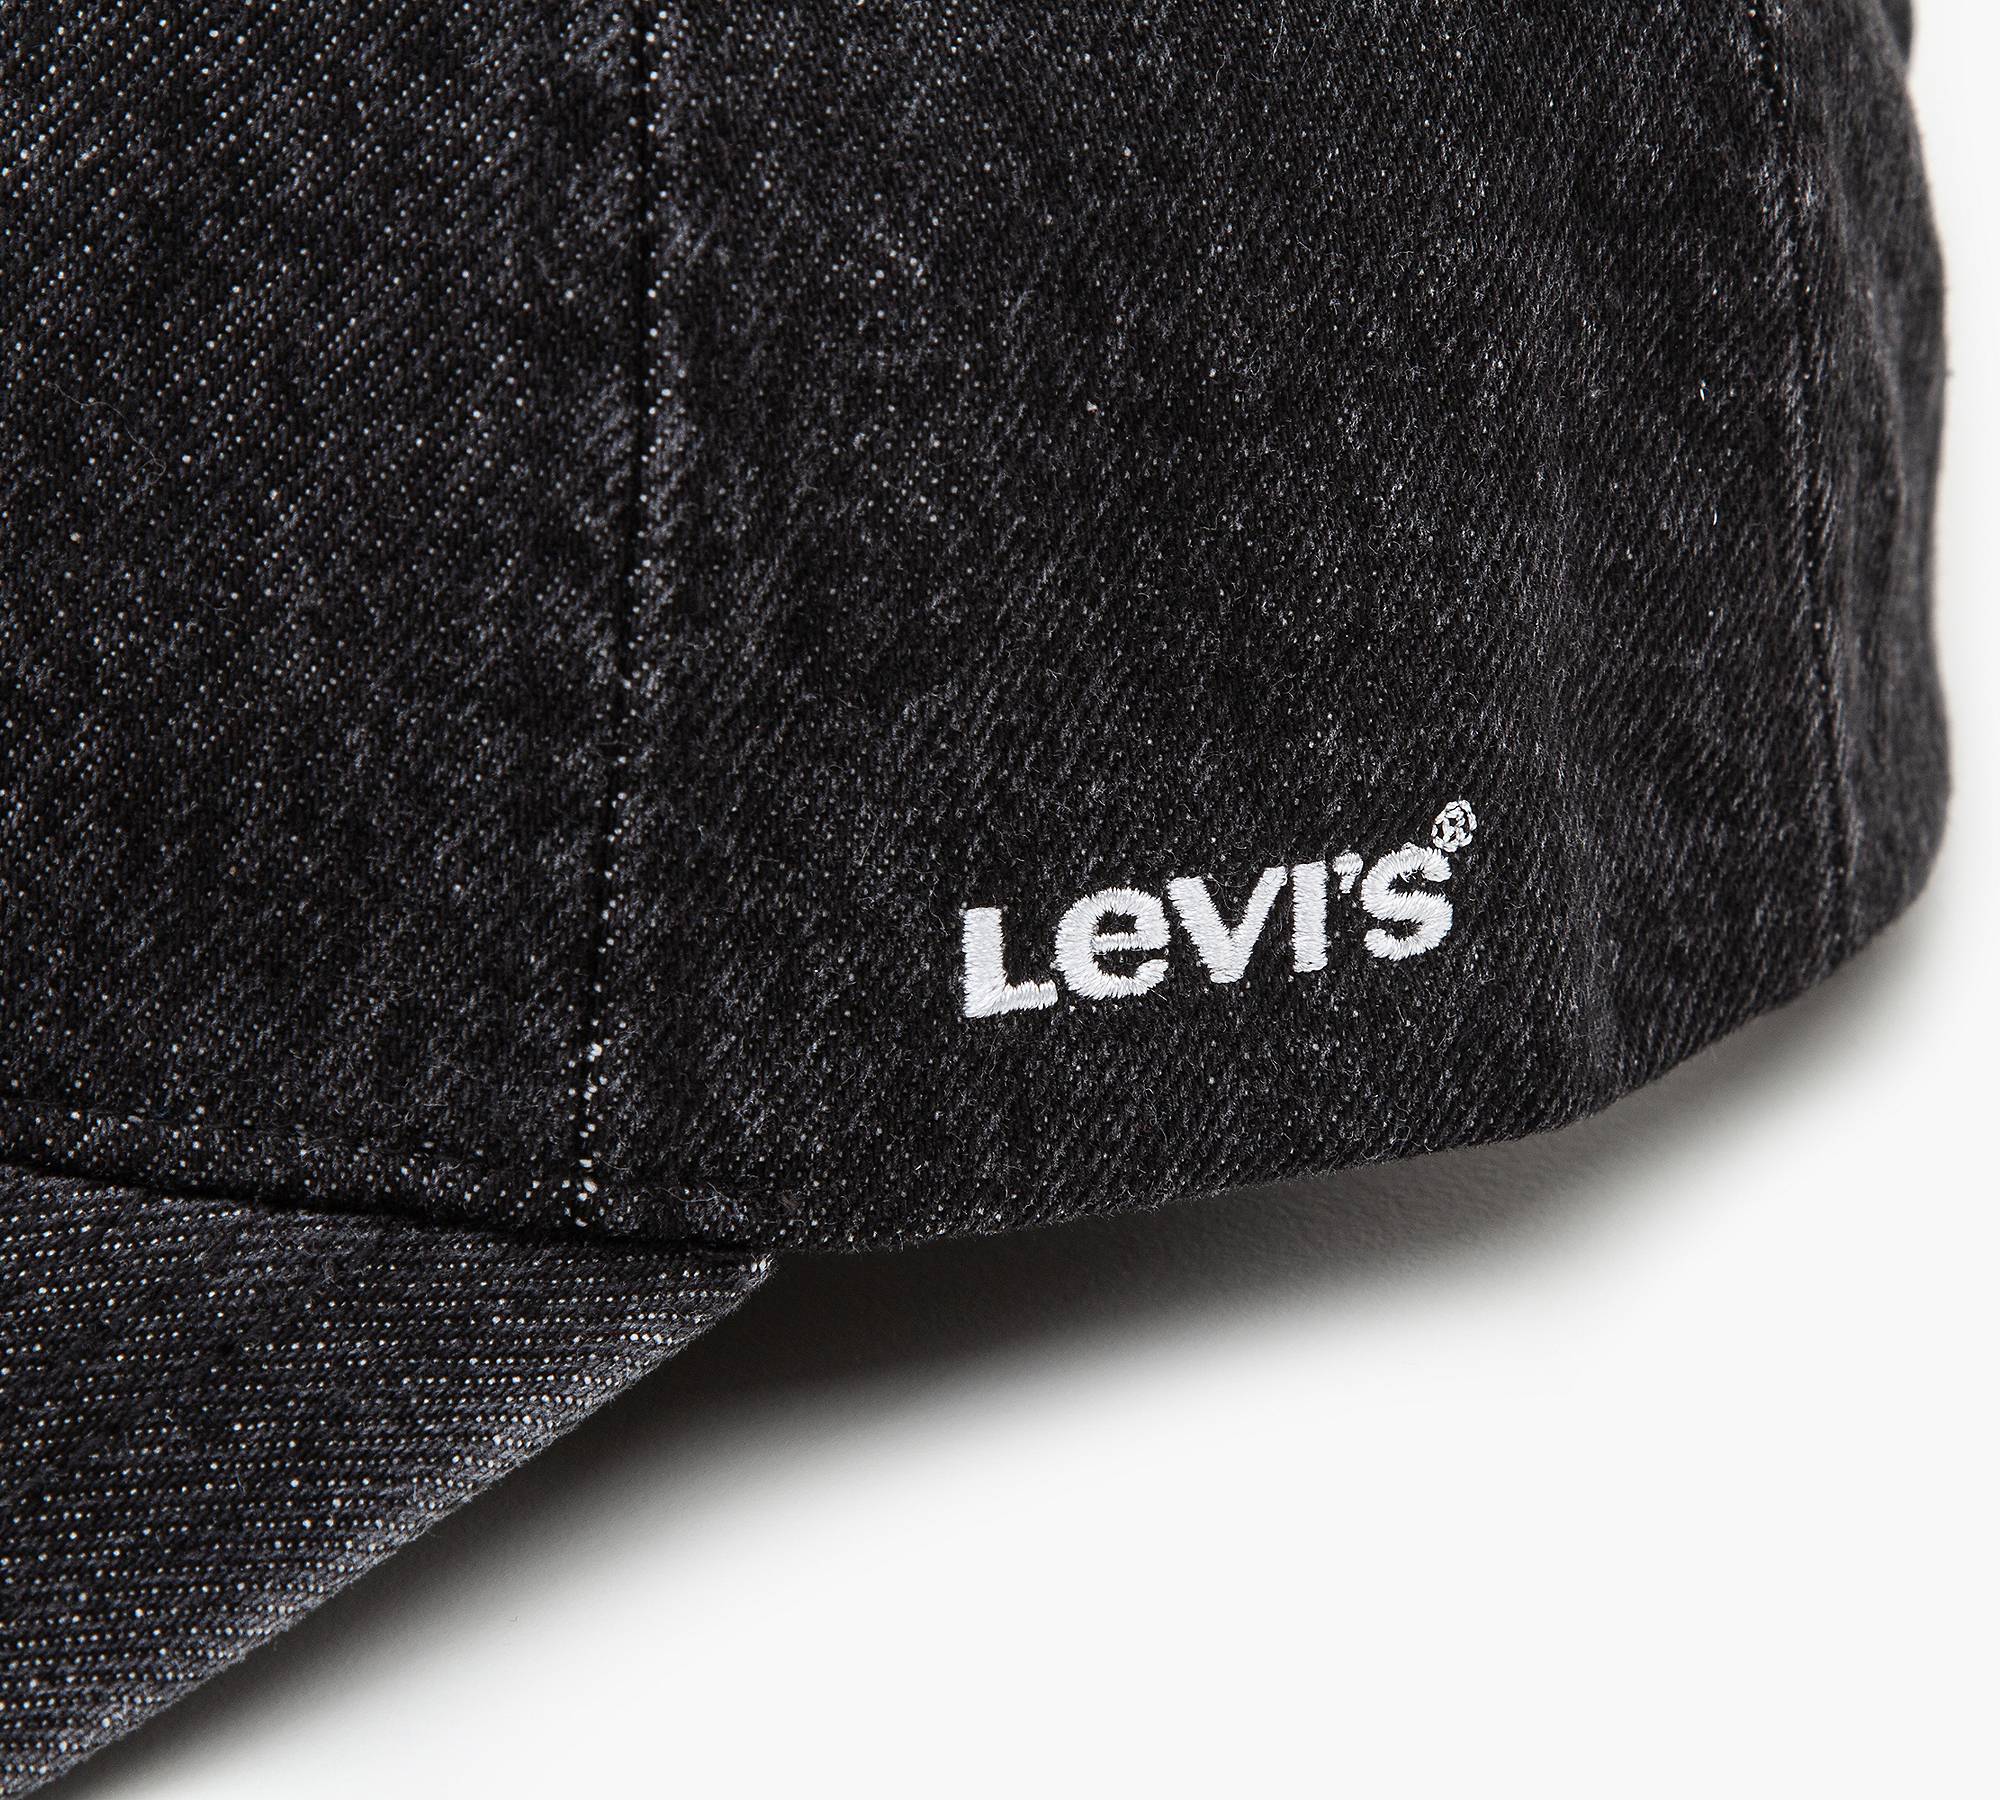 Casquette noire - Levi's en coton Levi's - Casquette Homme sur MenCorner